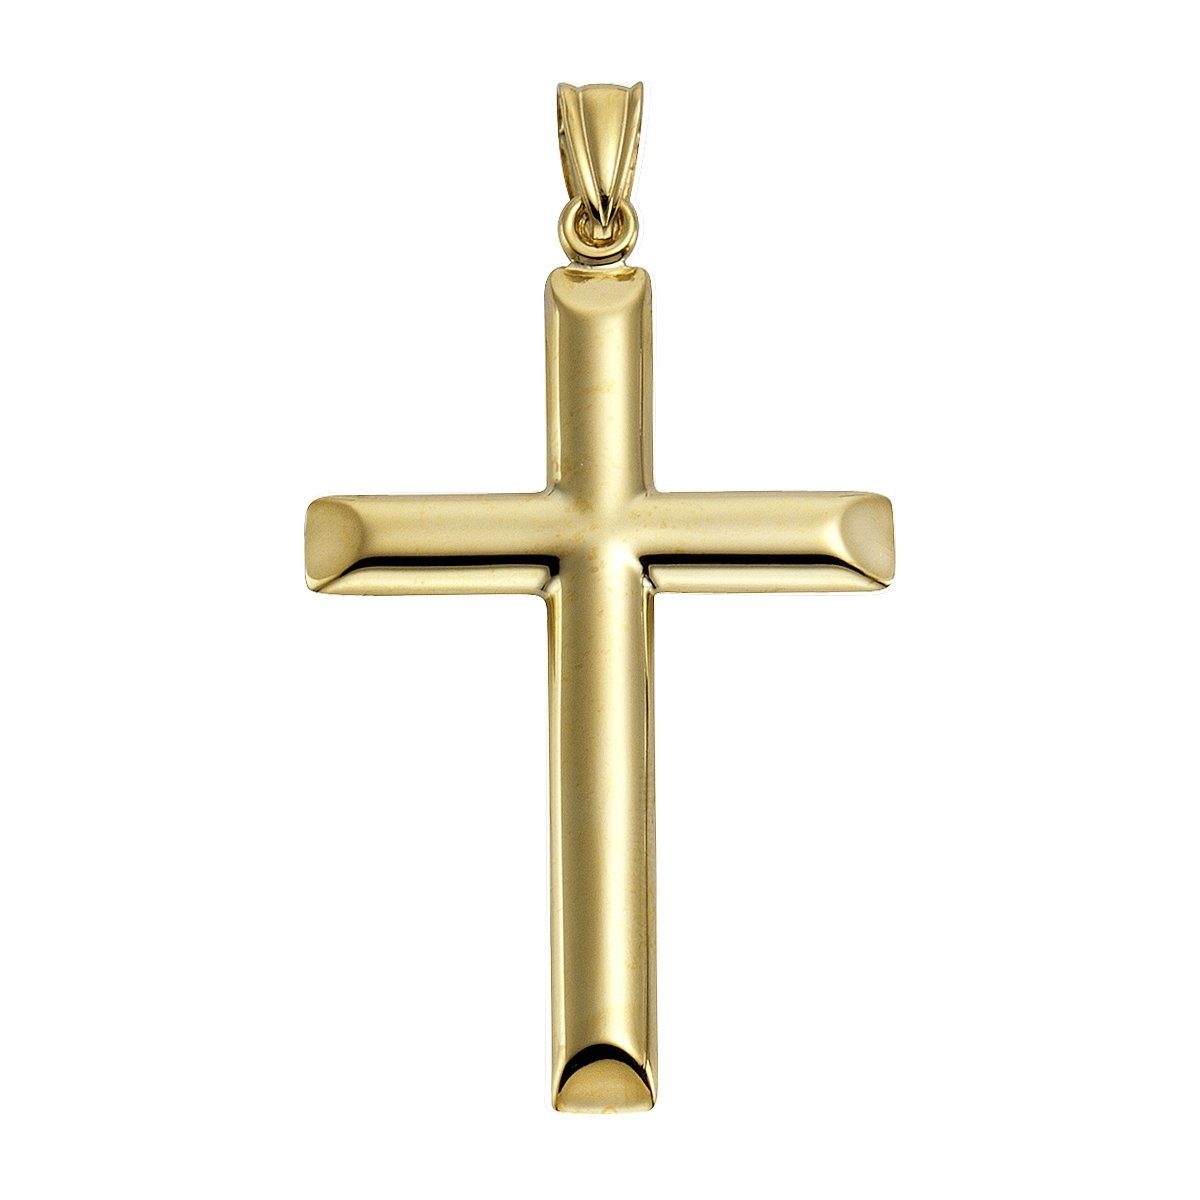 Mode liefern Vivance Kettenanhänger 585 Gold Motiv Kreuz